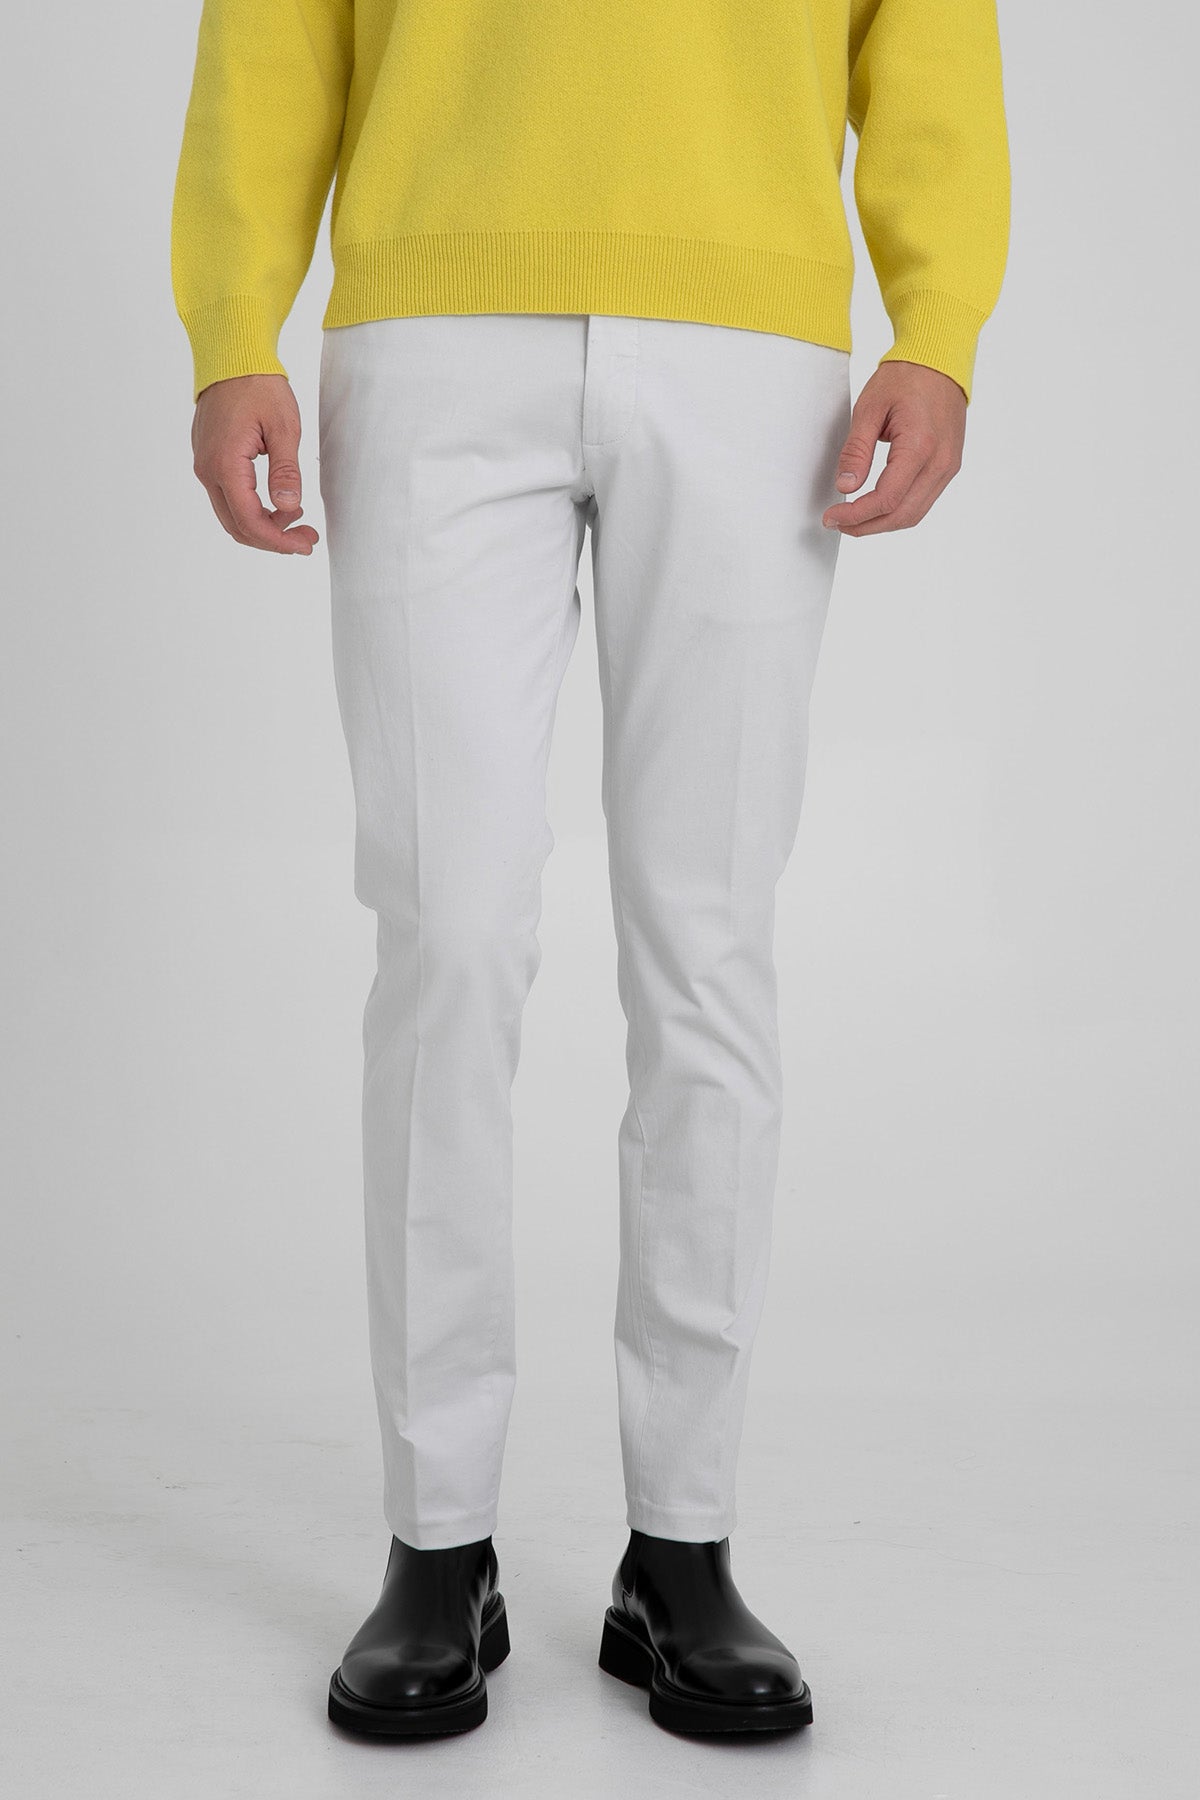 Antony Morato Bryan Skinny Fit Yandan Cepli Pantolon-Libas Trendy Fashion Store